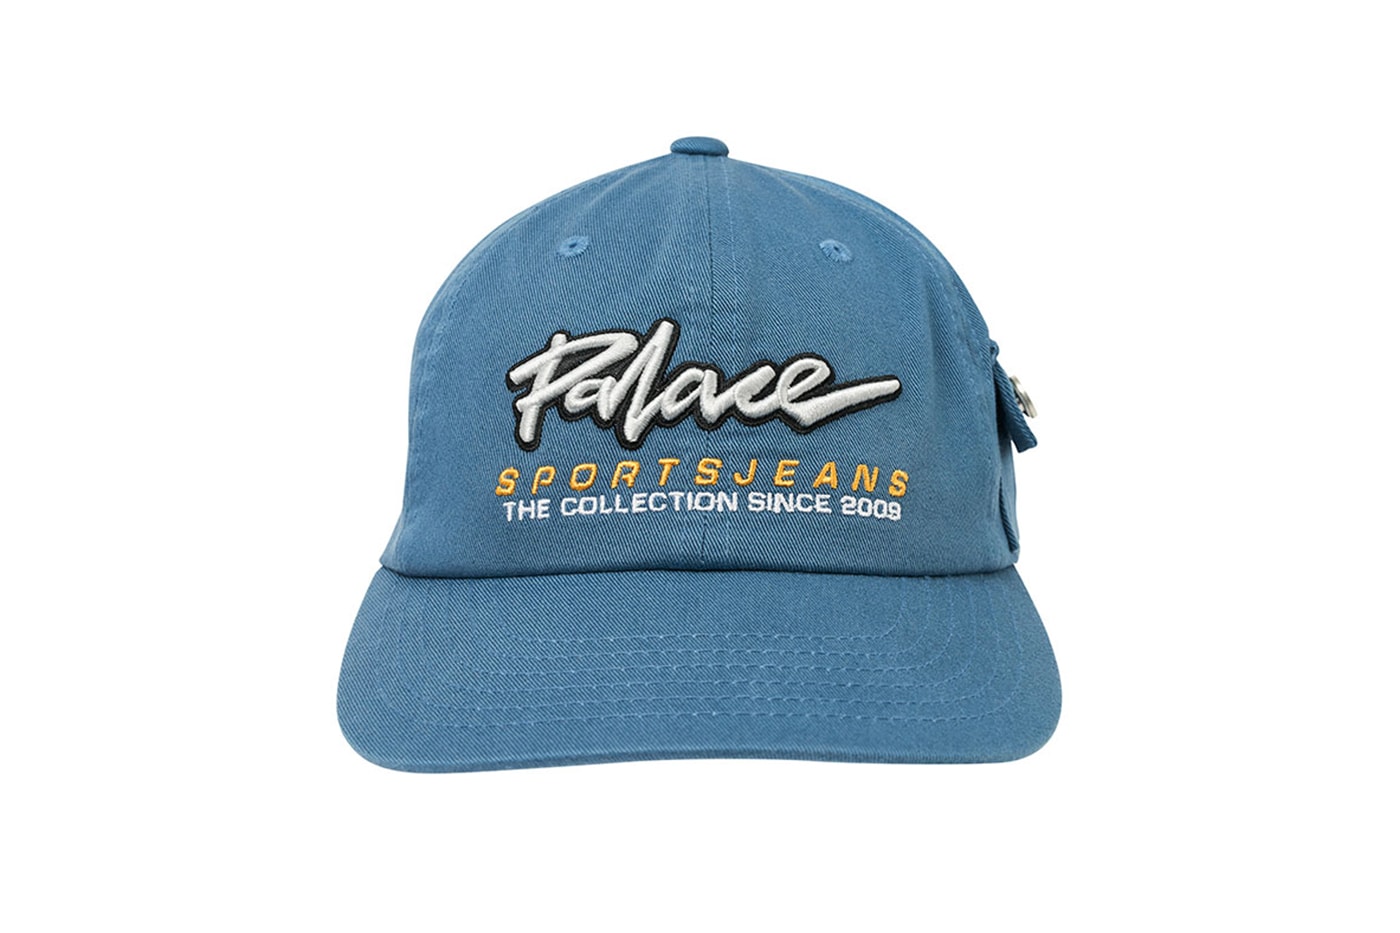 パレス スケートボード Palace Summer 2020 Hats Caps bucket safari Tri ferg logo dance control sportsjeans collection suede tartan checks